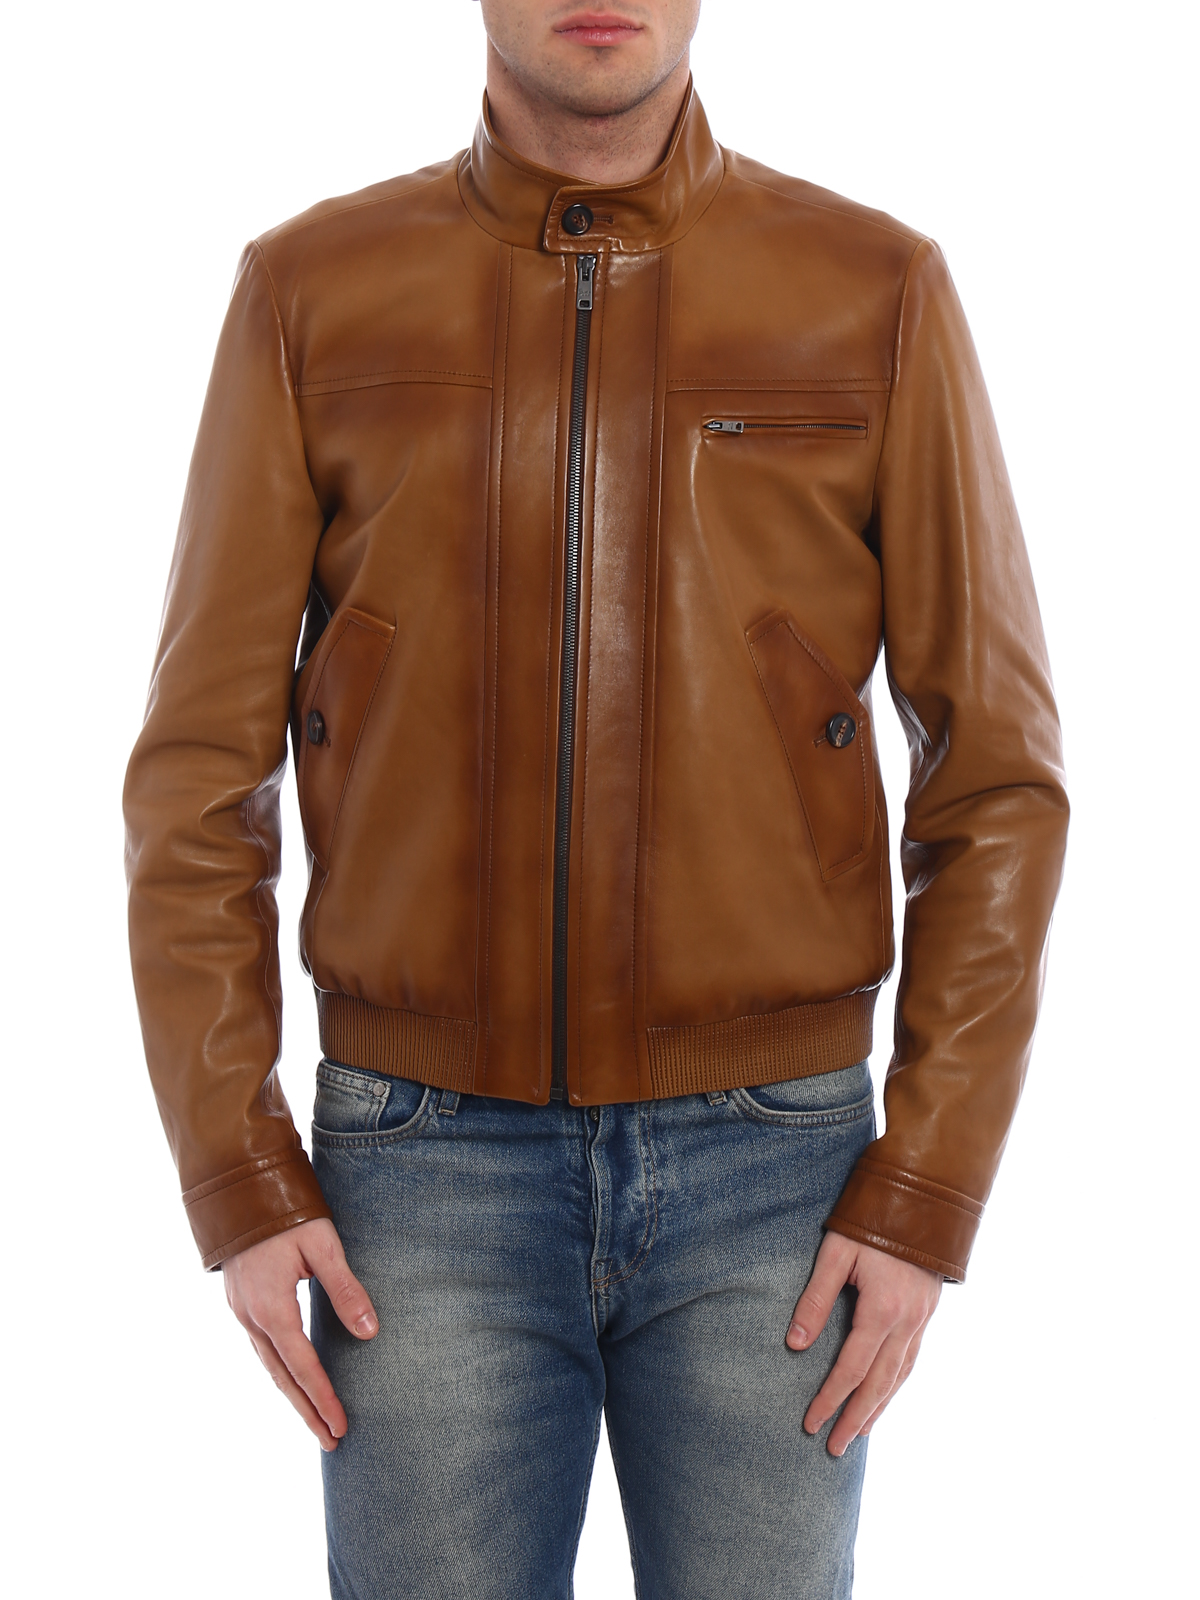 Leather jacket Prada - Waxed nappa jacket - UPW1431PNHF0418 